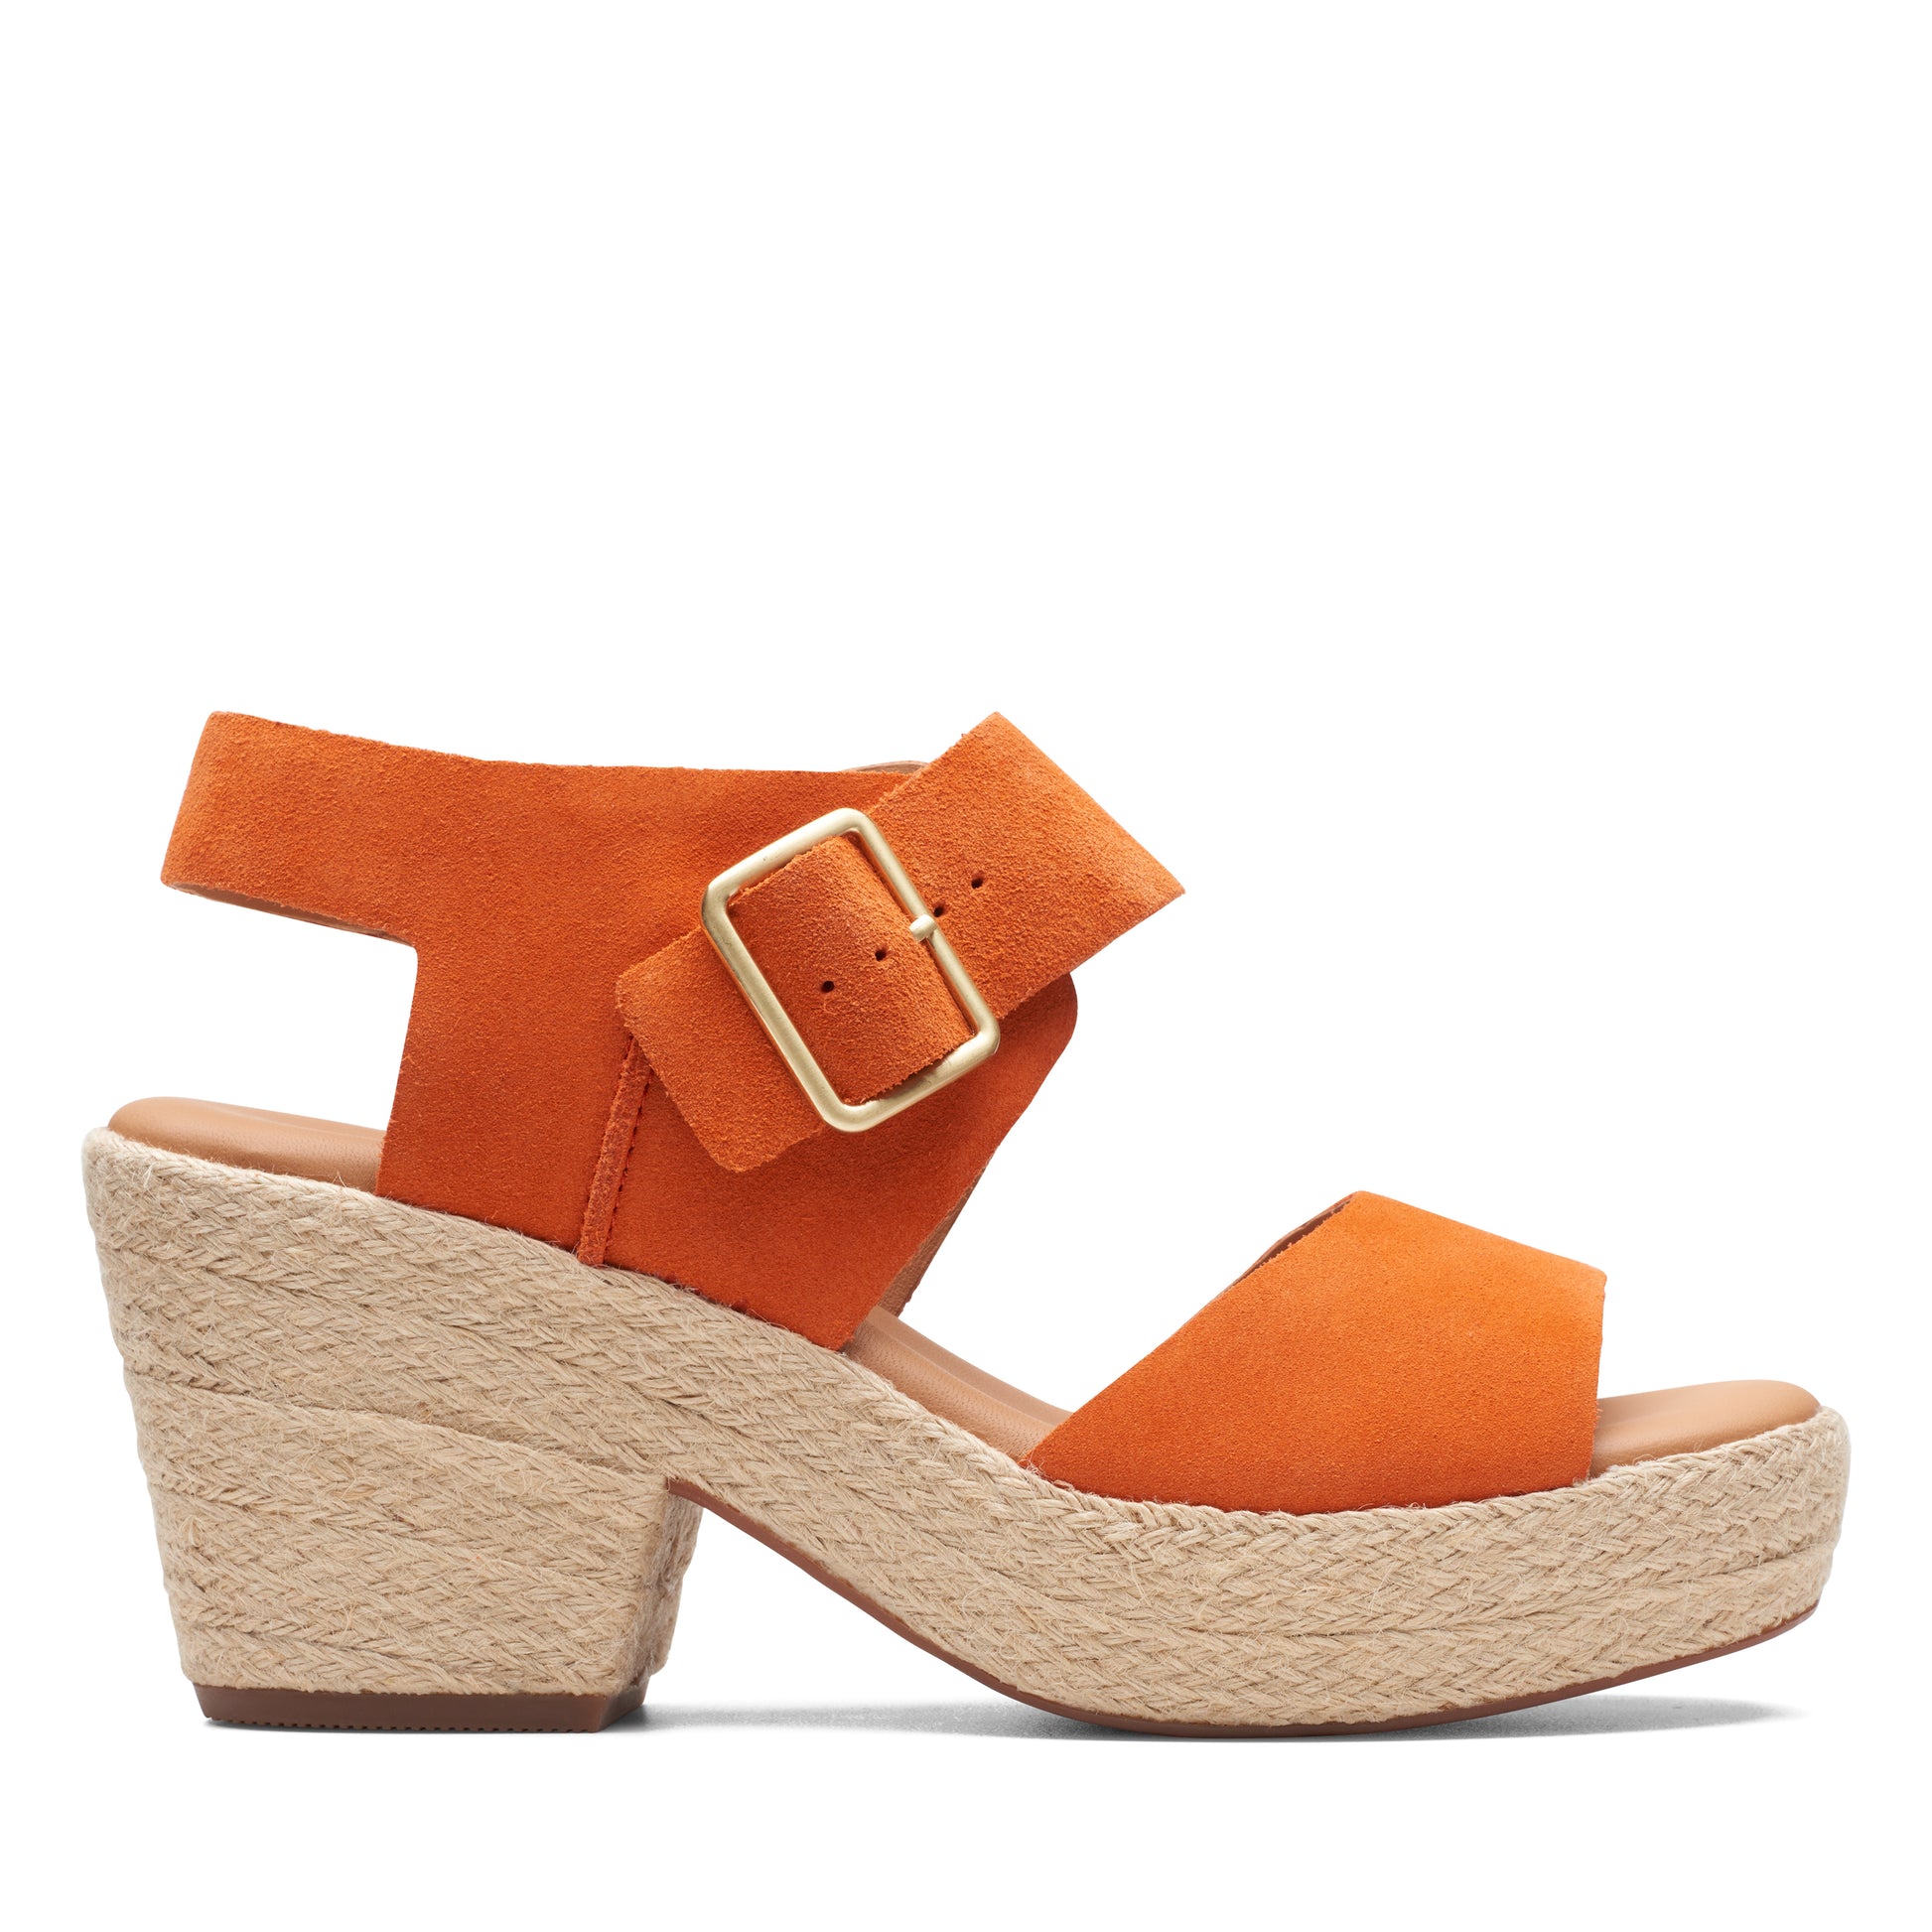 Zapato De Cuña De La Marca Clarks Para Mujer Modelo Kimmei Hi Strap Orange Suede En Color Naranja